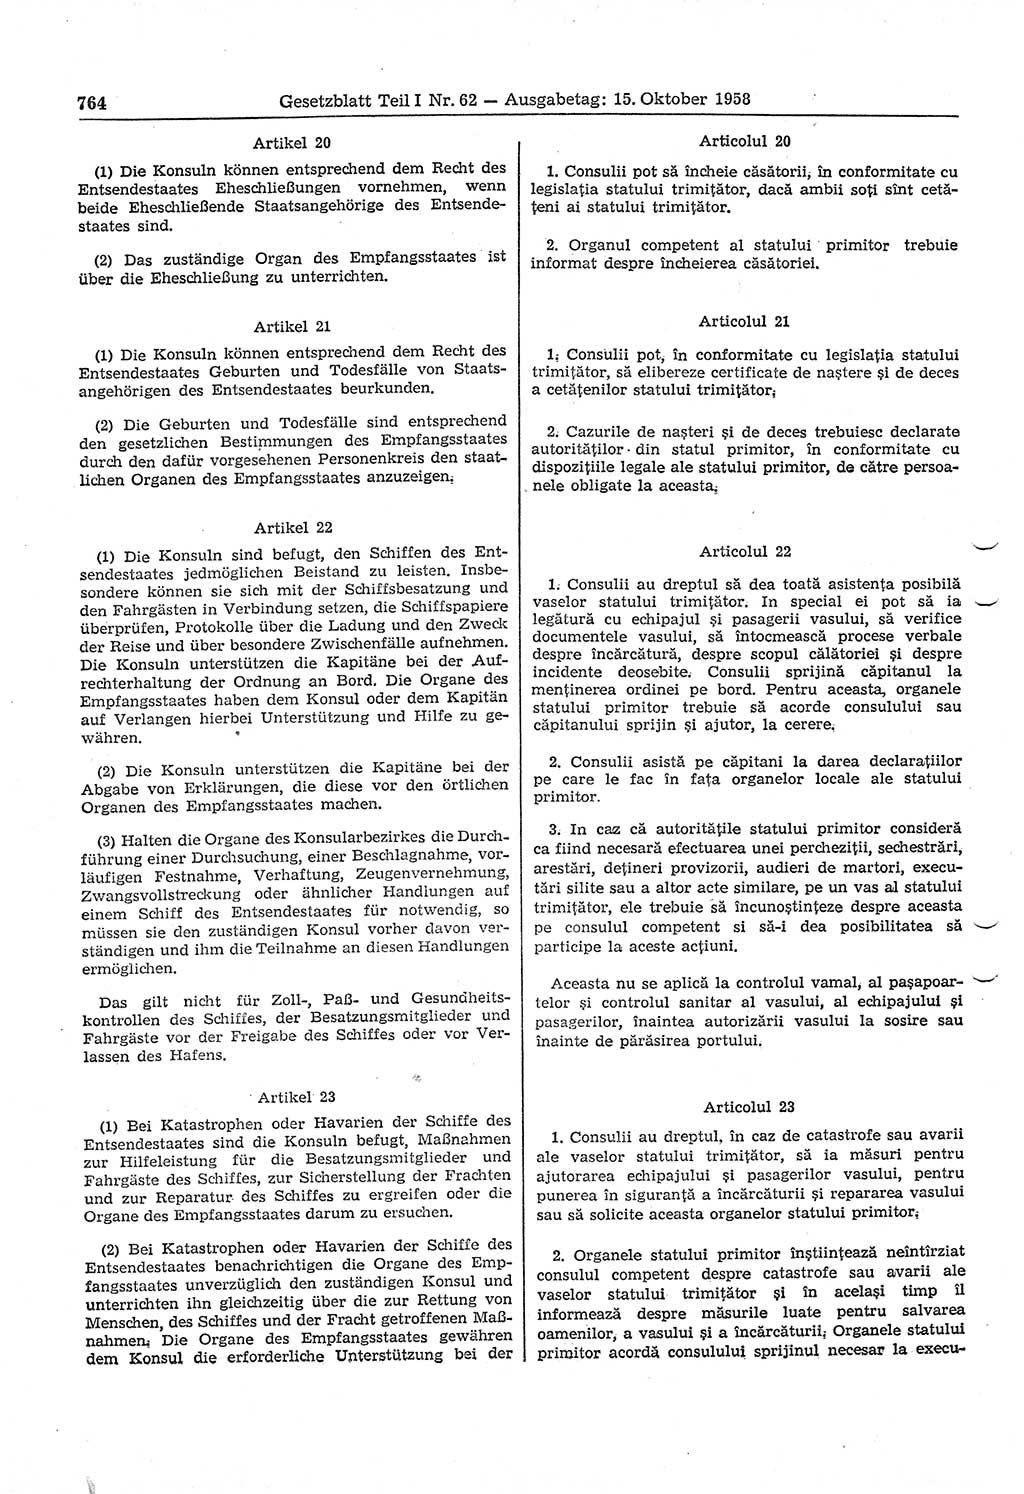 Gesetzblatt (GBl.) der Deutschen Demokratischen Republik (DDR) Teil Ⅰ 1958, Seite 764 (GBl. DDR Ⅰ 1958, S. 764)